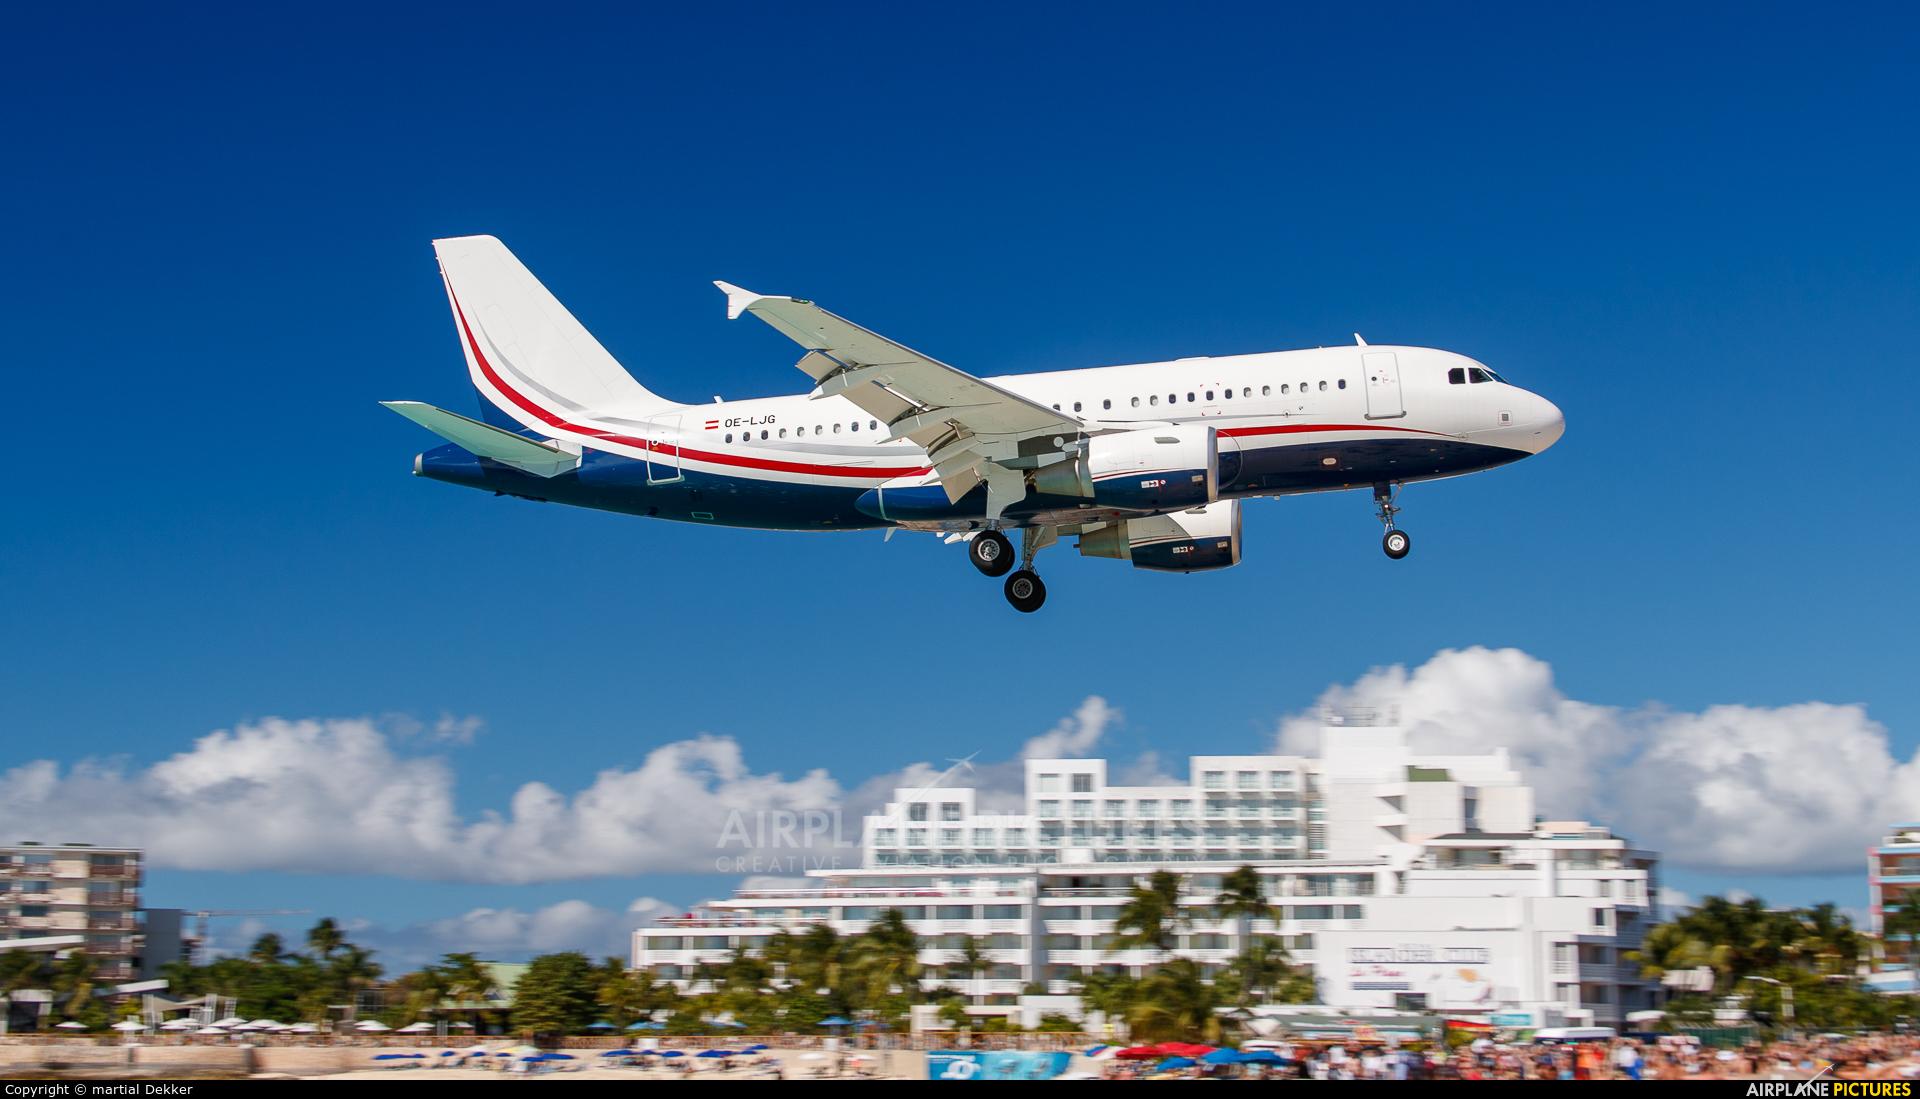 MJet Aviation OE-LJG aircraft at Sint Maarten - Princess Juliana Intl